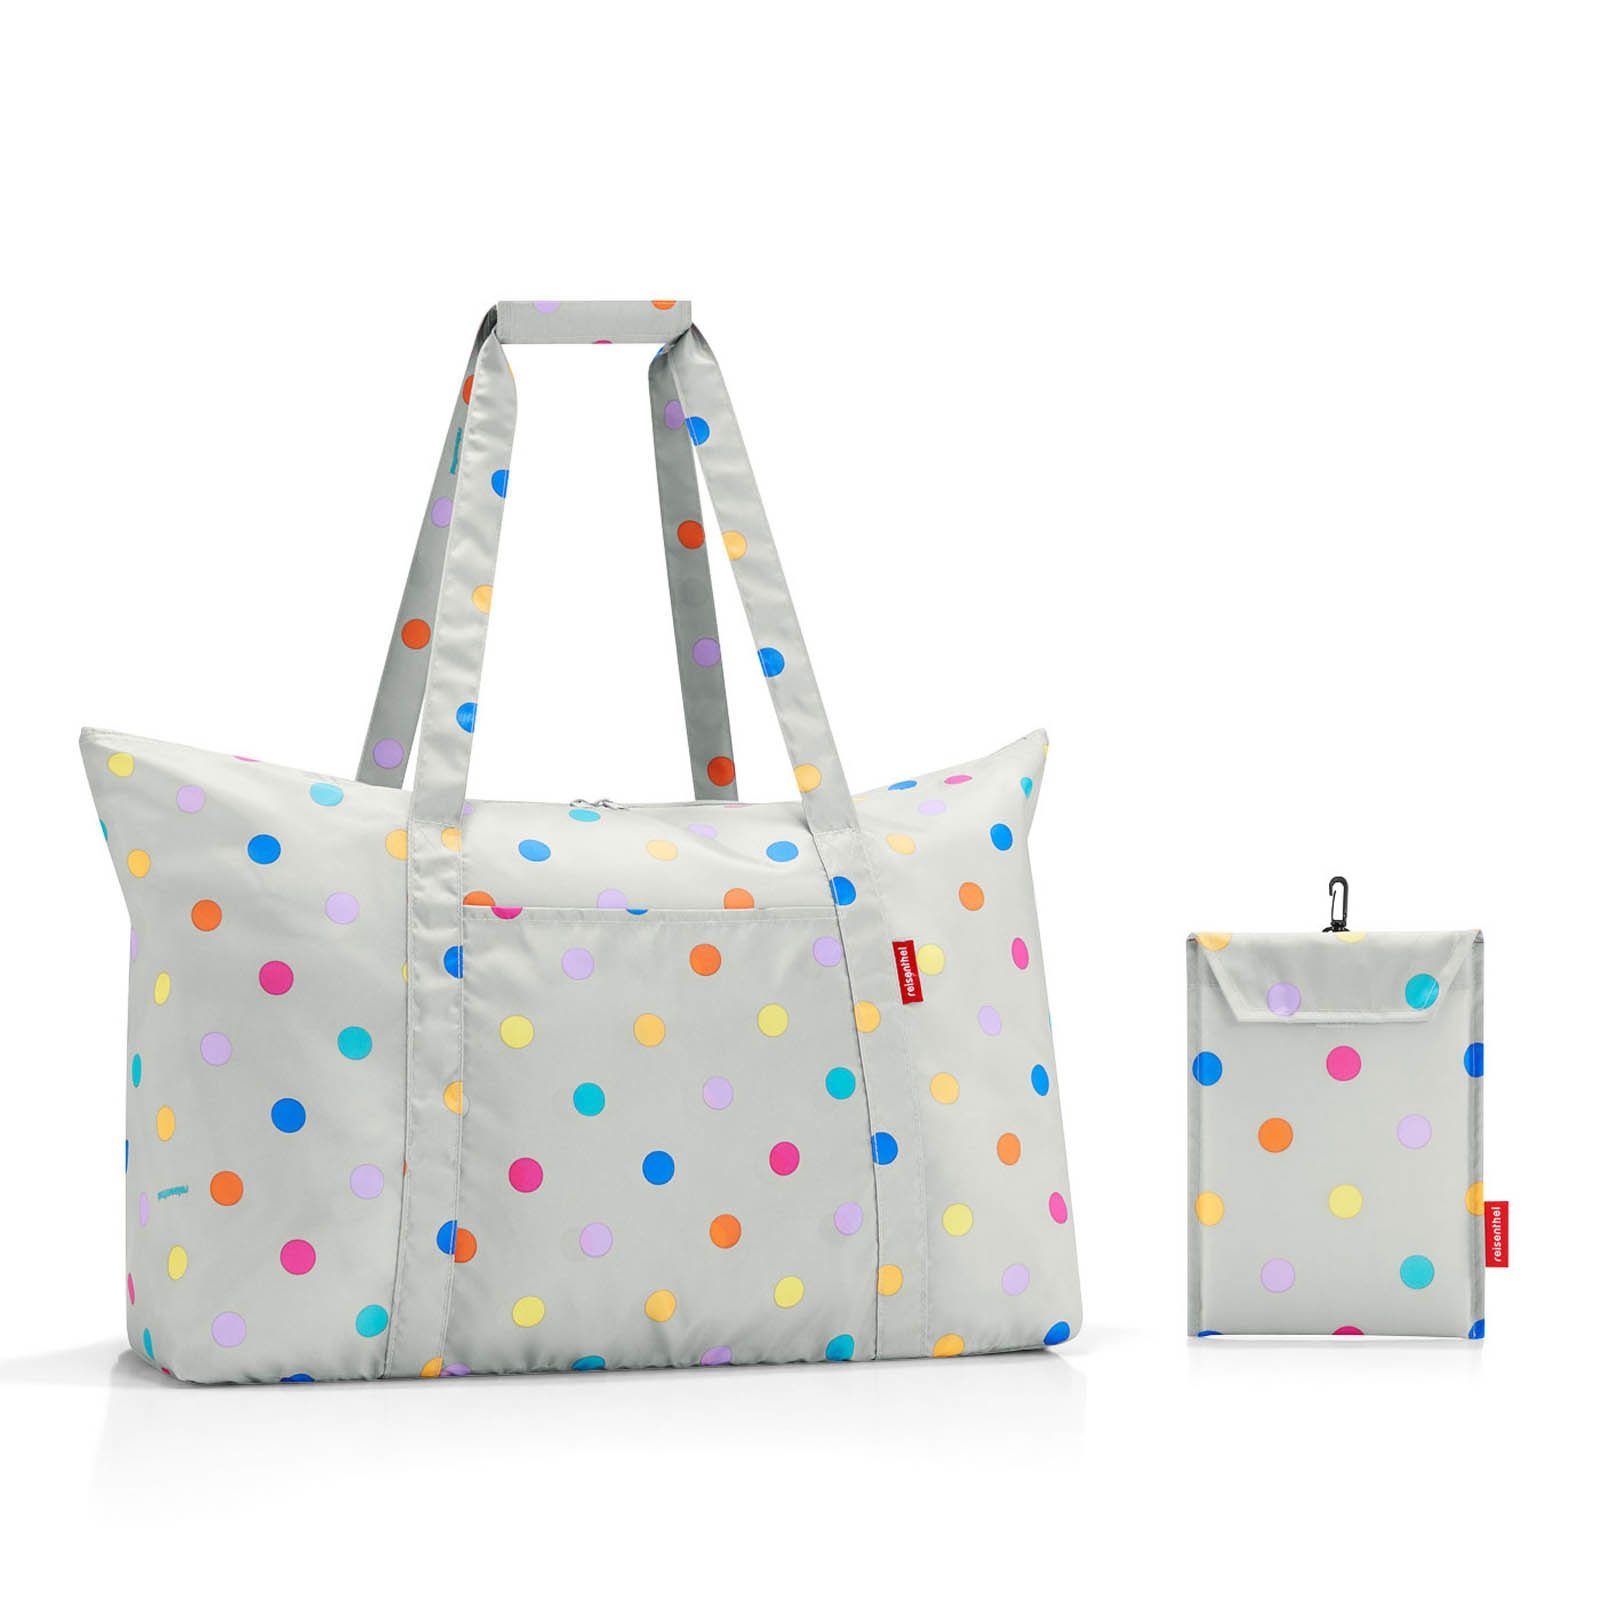 REISENTHEL® Strandtasche Badetasche mini maxi travelbag, Taschen & Gepäck